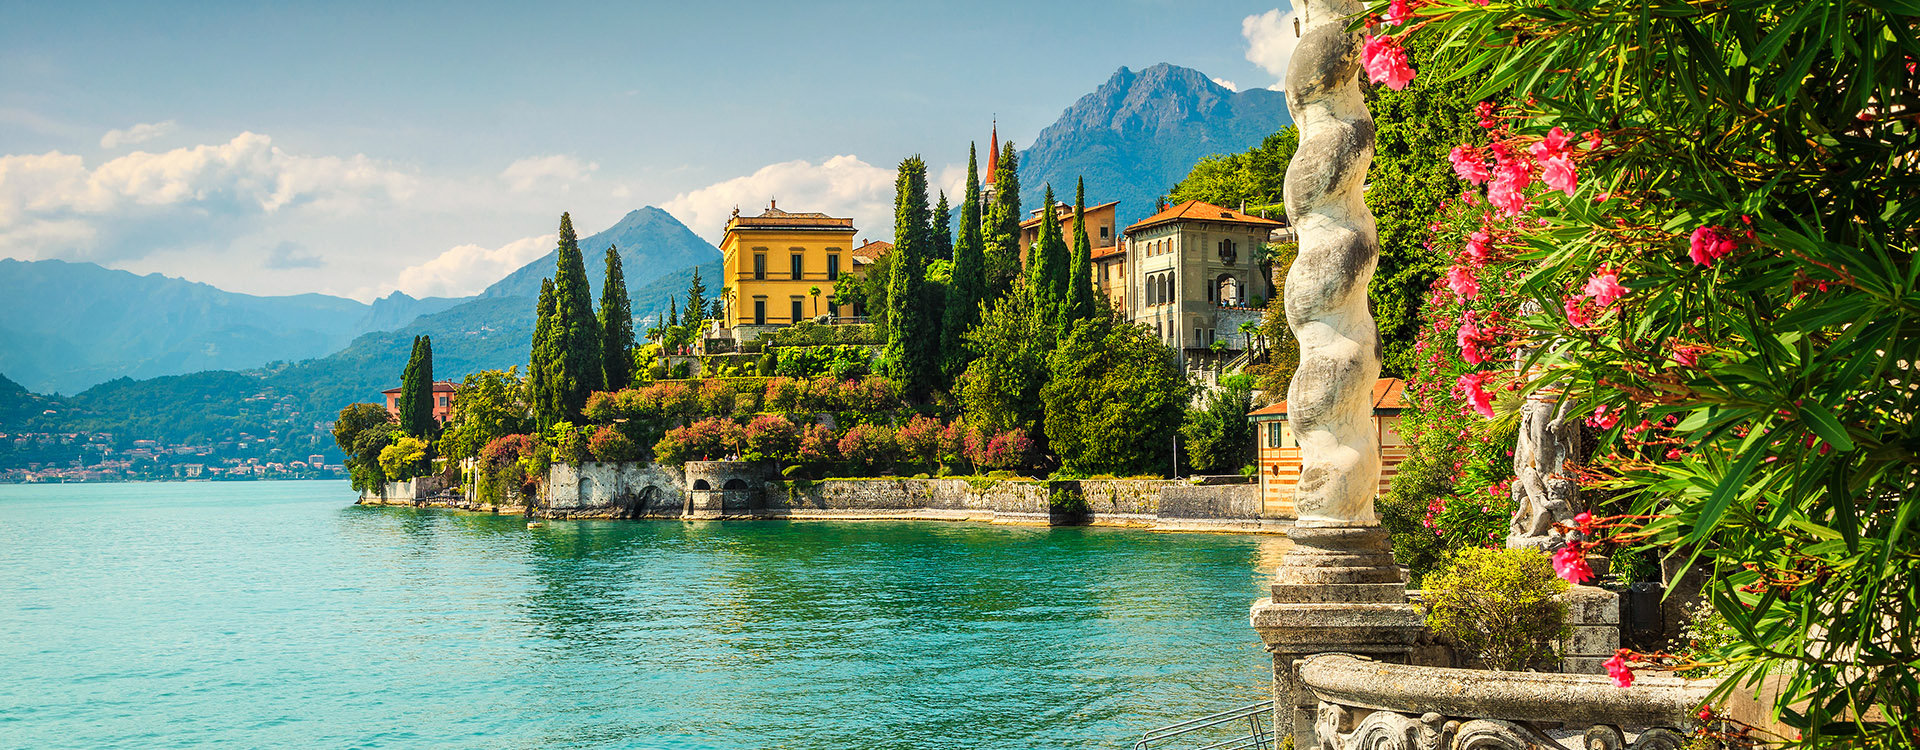 Lake Como, Varenna, Lombardy region, Italy, Europe